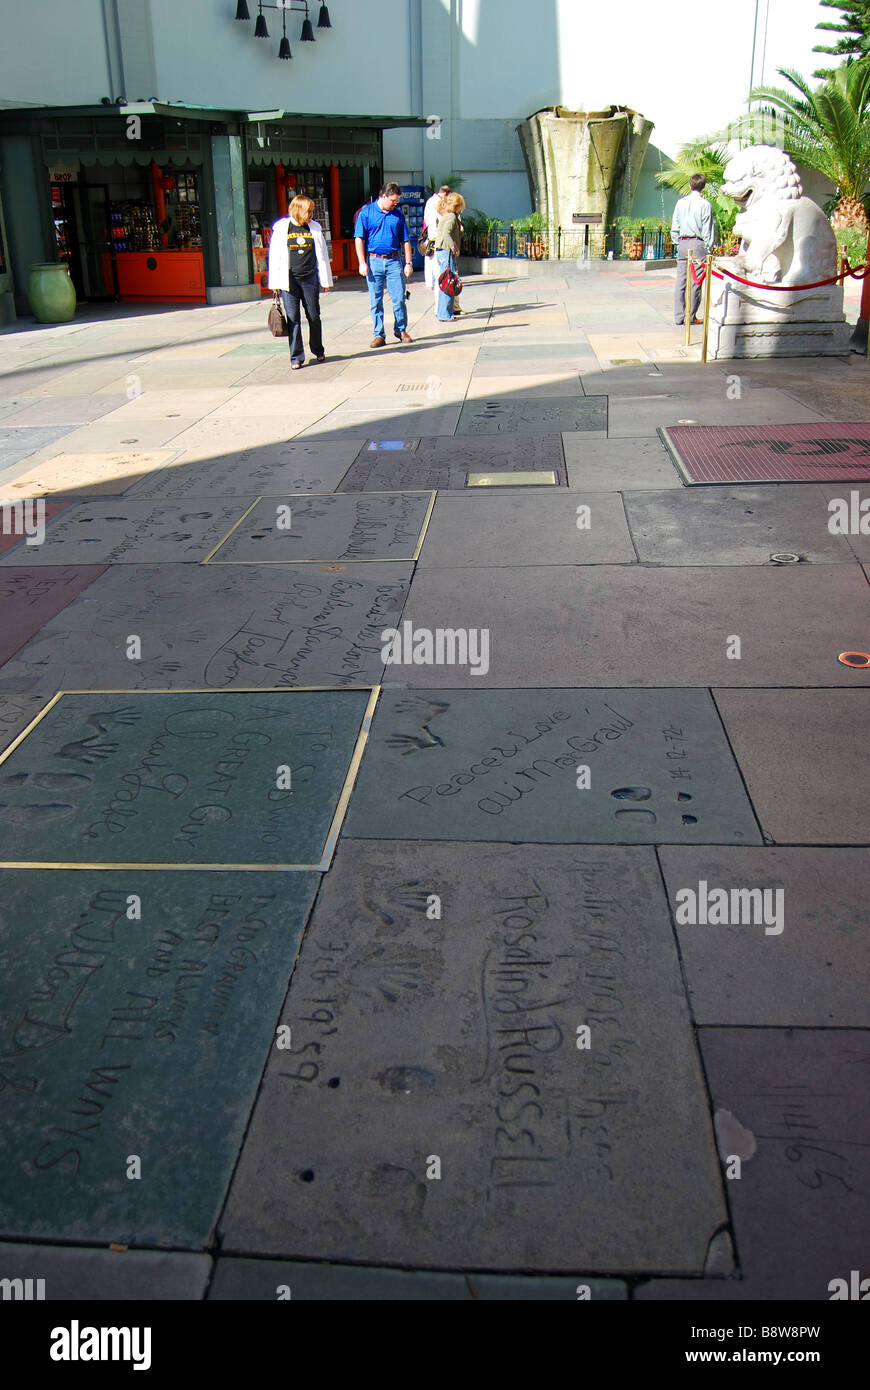 Les célébrités hollywoodiennes se font une main sur la piste du théâtre chinois de TCL Grauman, Hollywood Boulevard, Los Angeles, Californie, États-Unis d'Amérique Banque D'Images